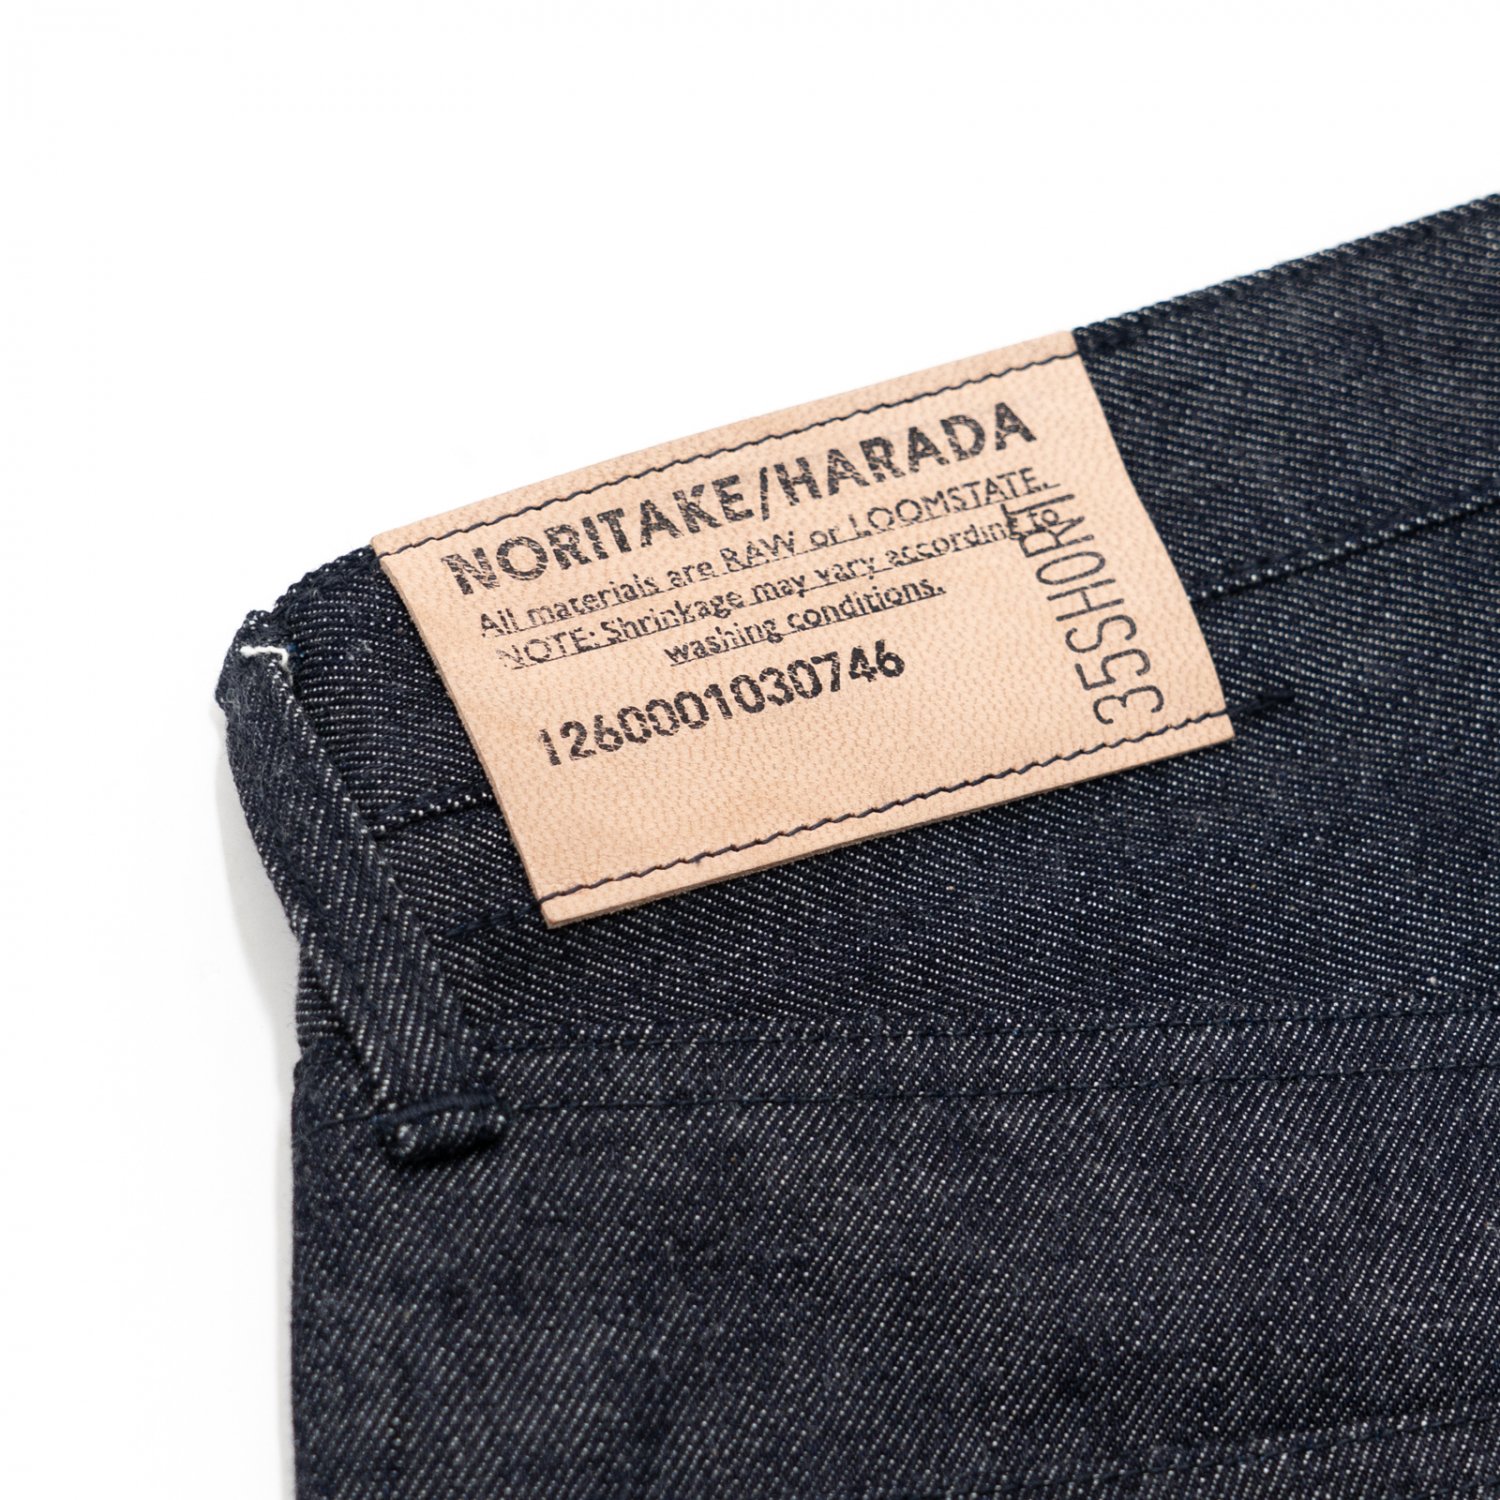 NORITAKE/HARADA * Denim Pants 35inch Short